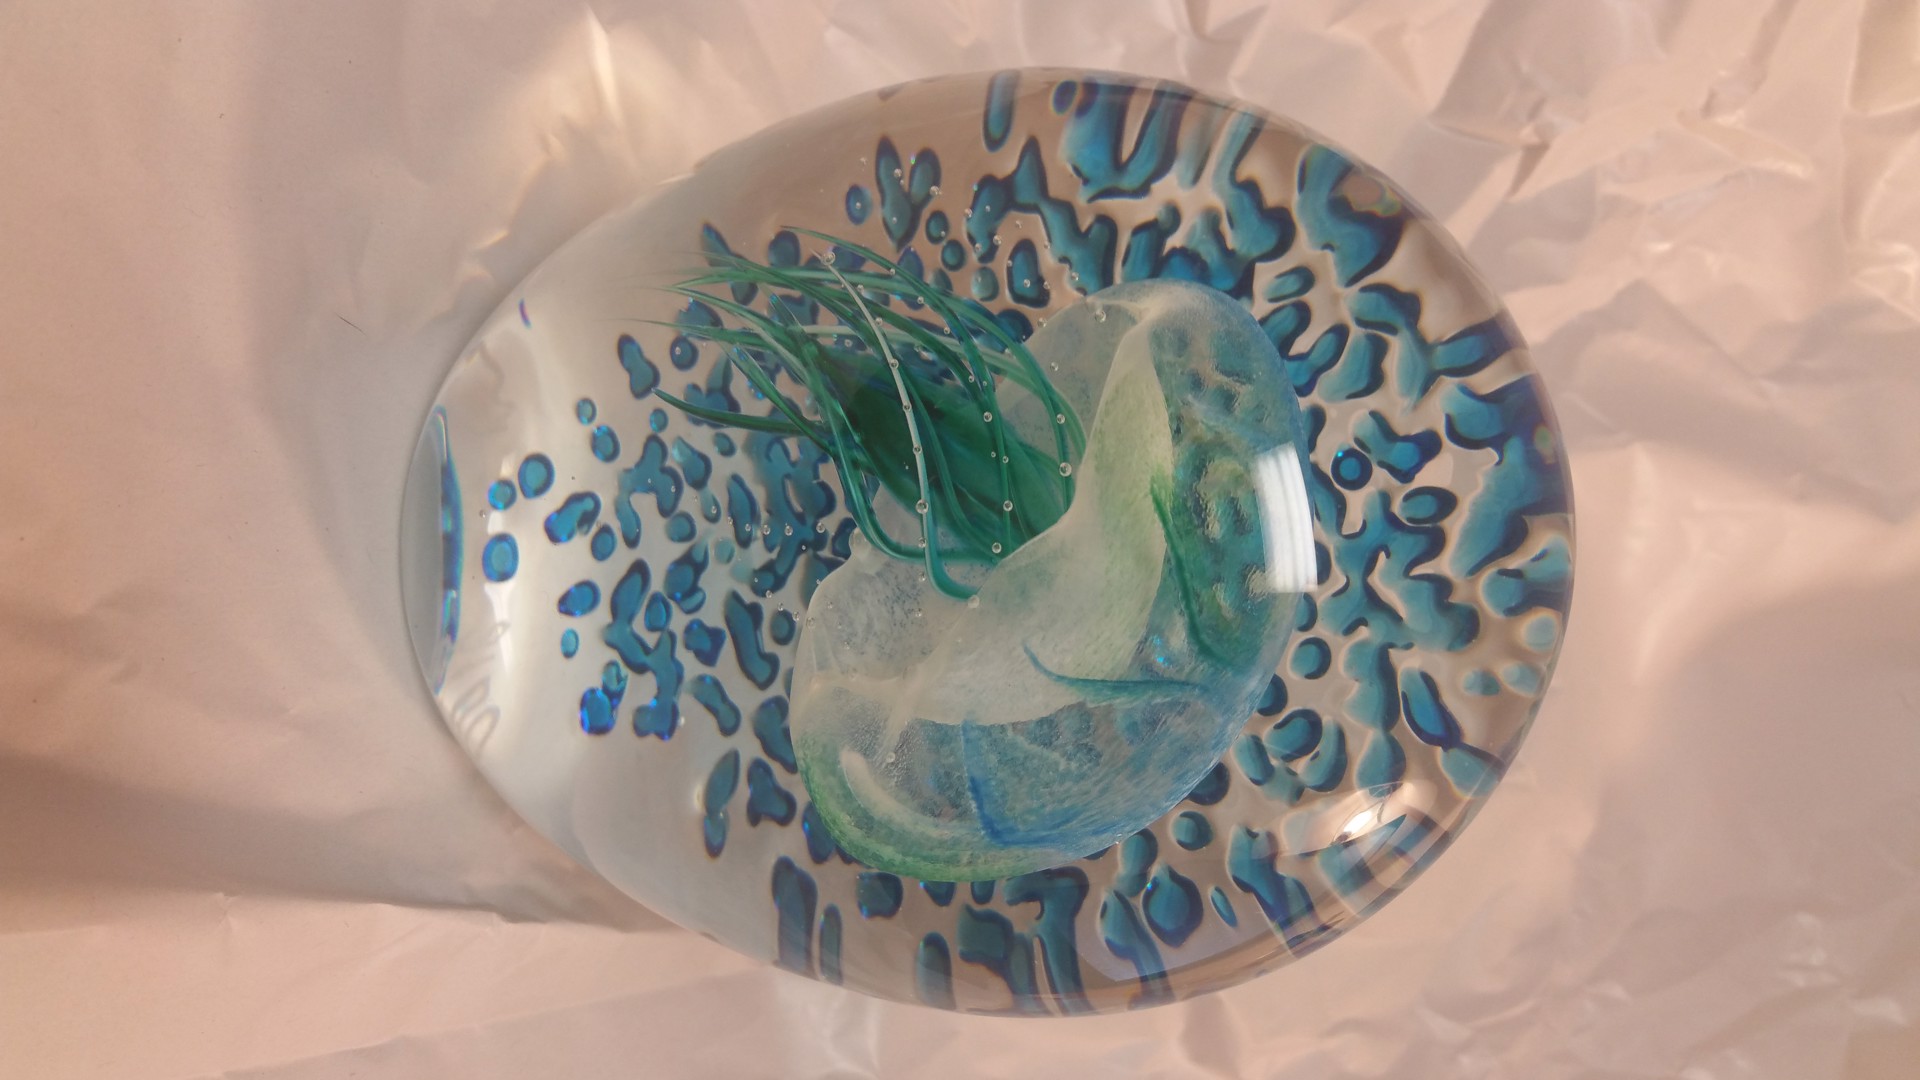 Sideways Ripple Jelly Blue & Green w/Bubbles by Hot Island Glass